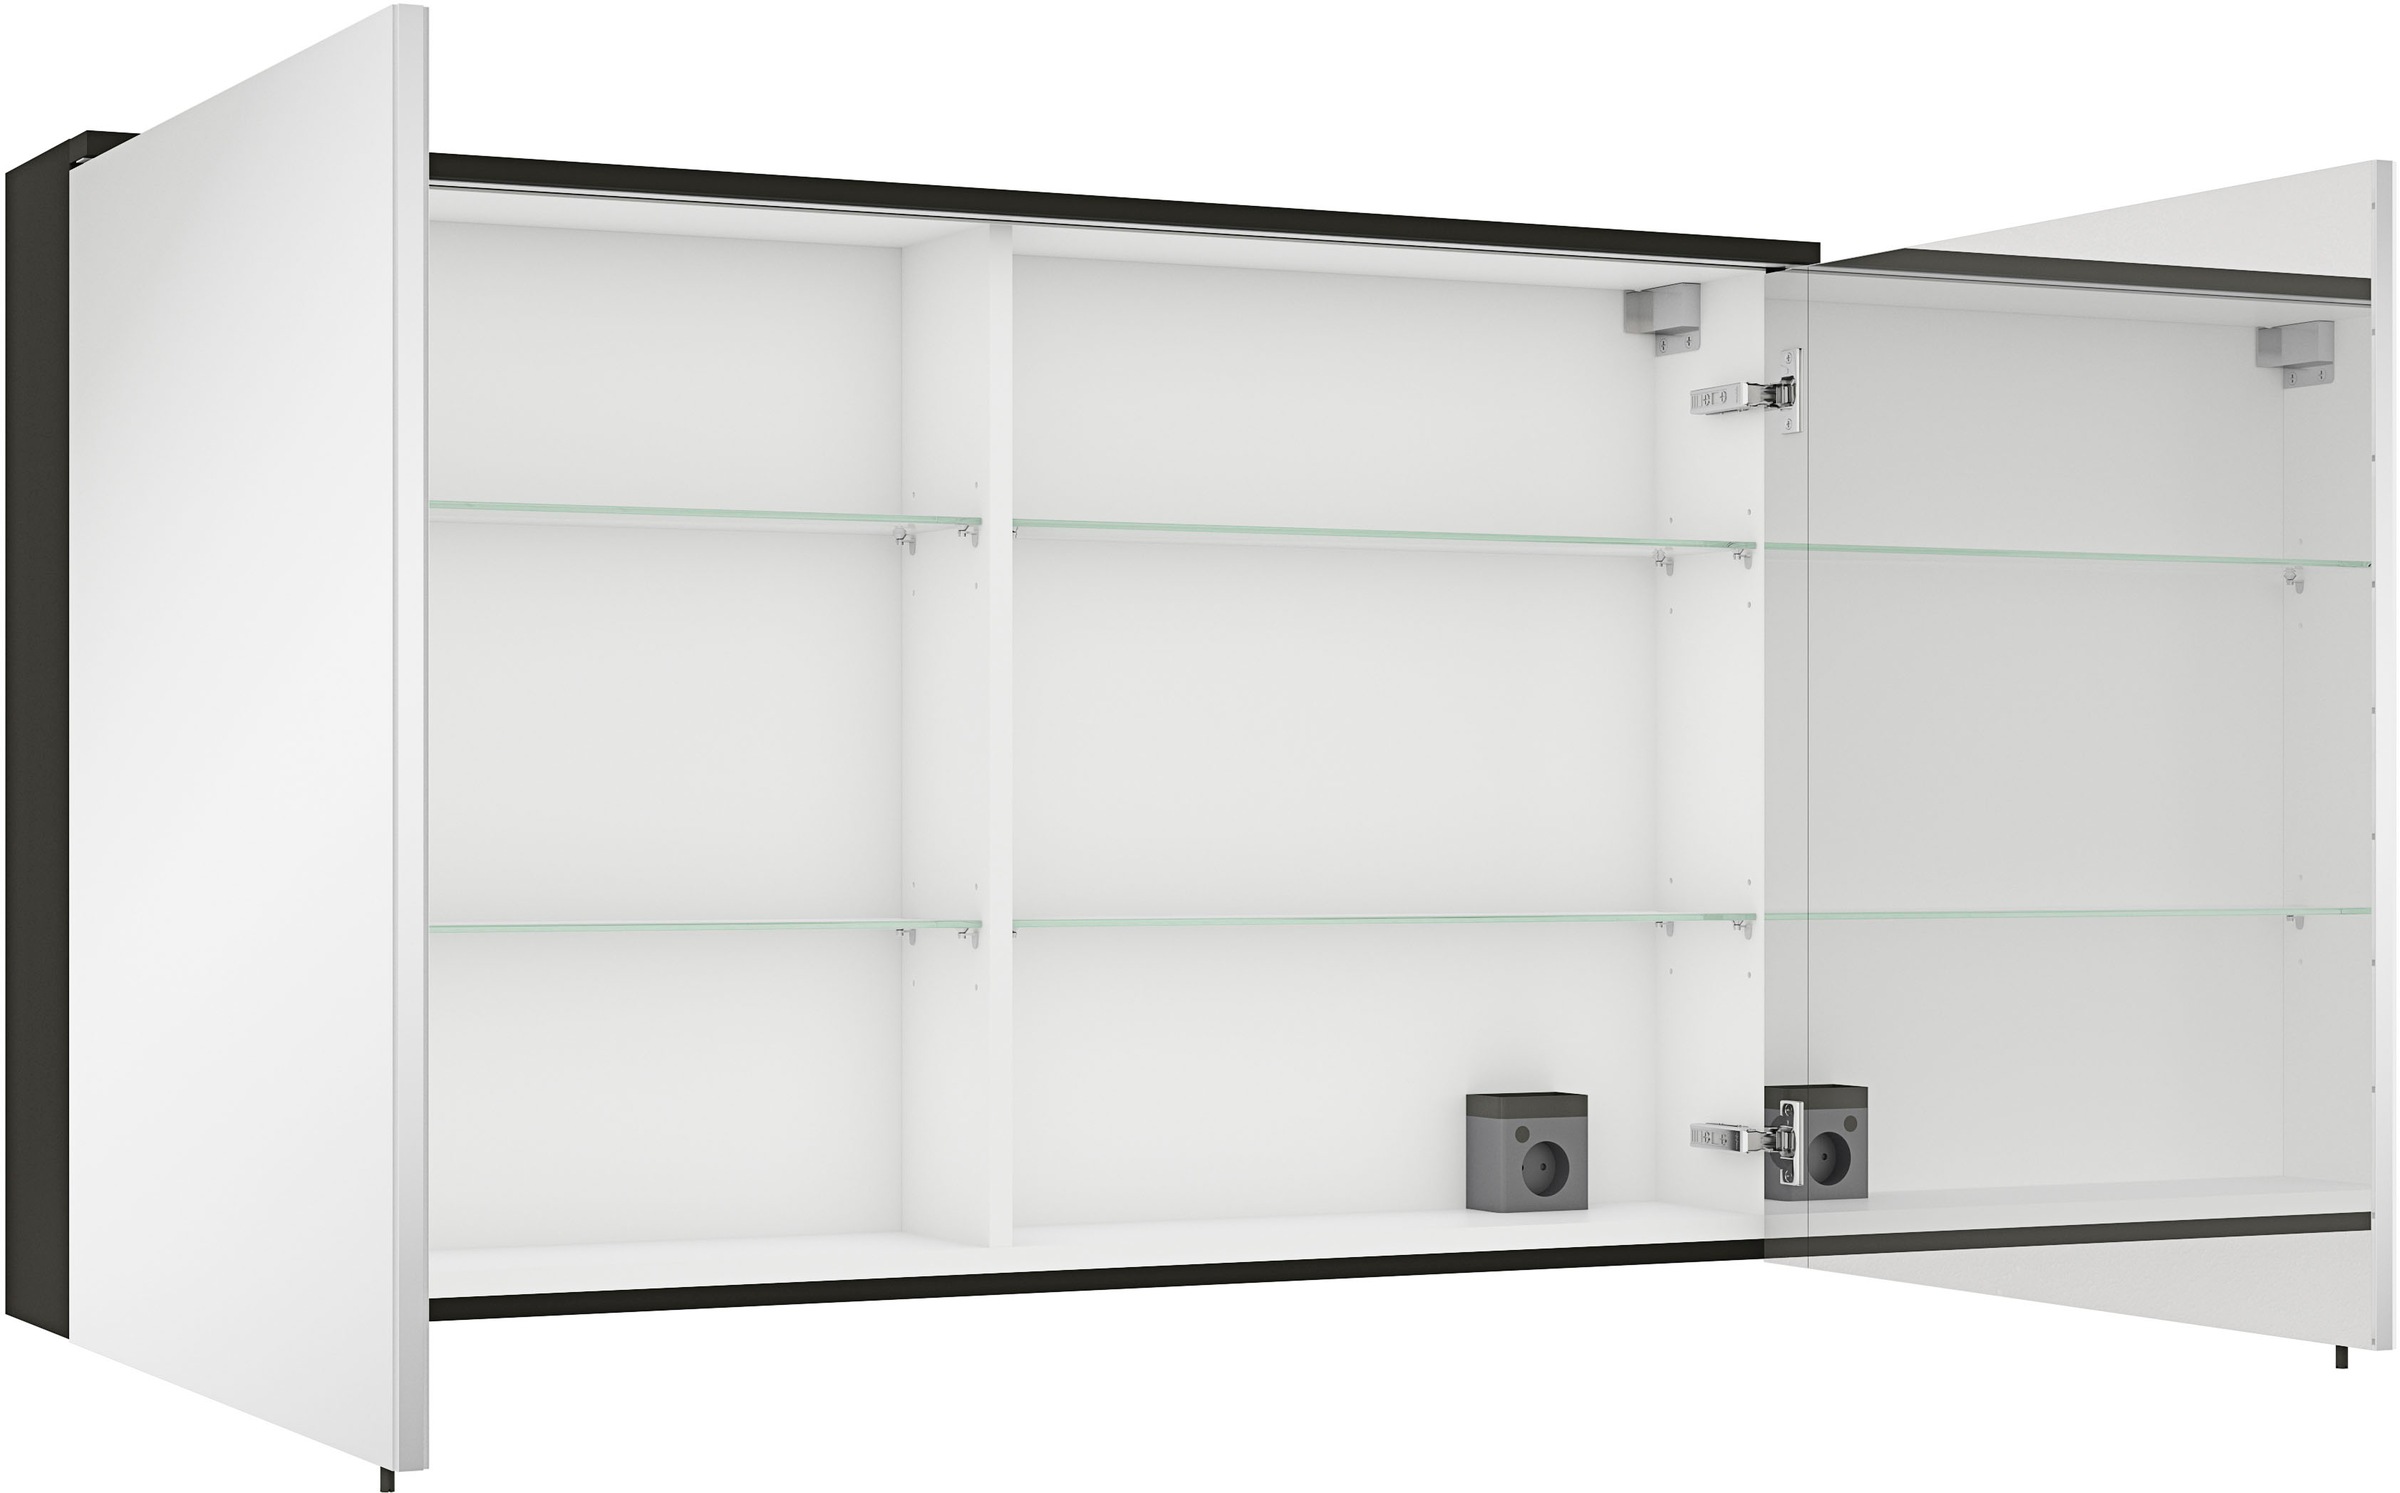 MARLIN Spiegelschrank »3510clarus«, 120 cm breit, Soft-Close-Funktion, inkl. Beleuchtung, vormontiert